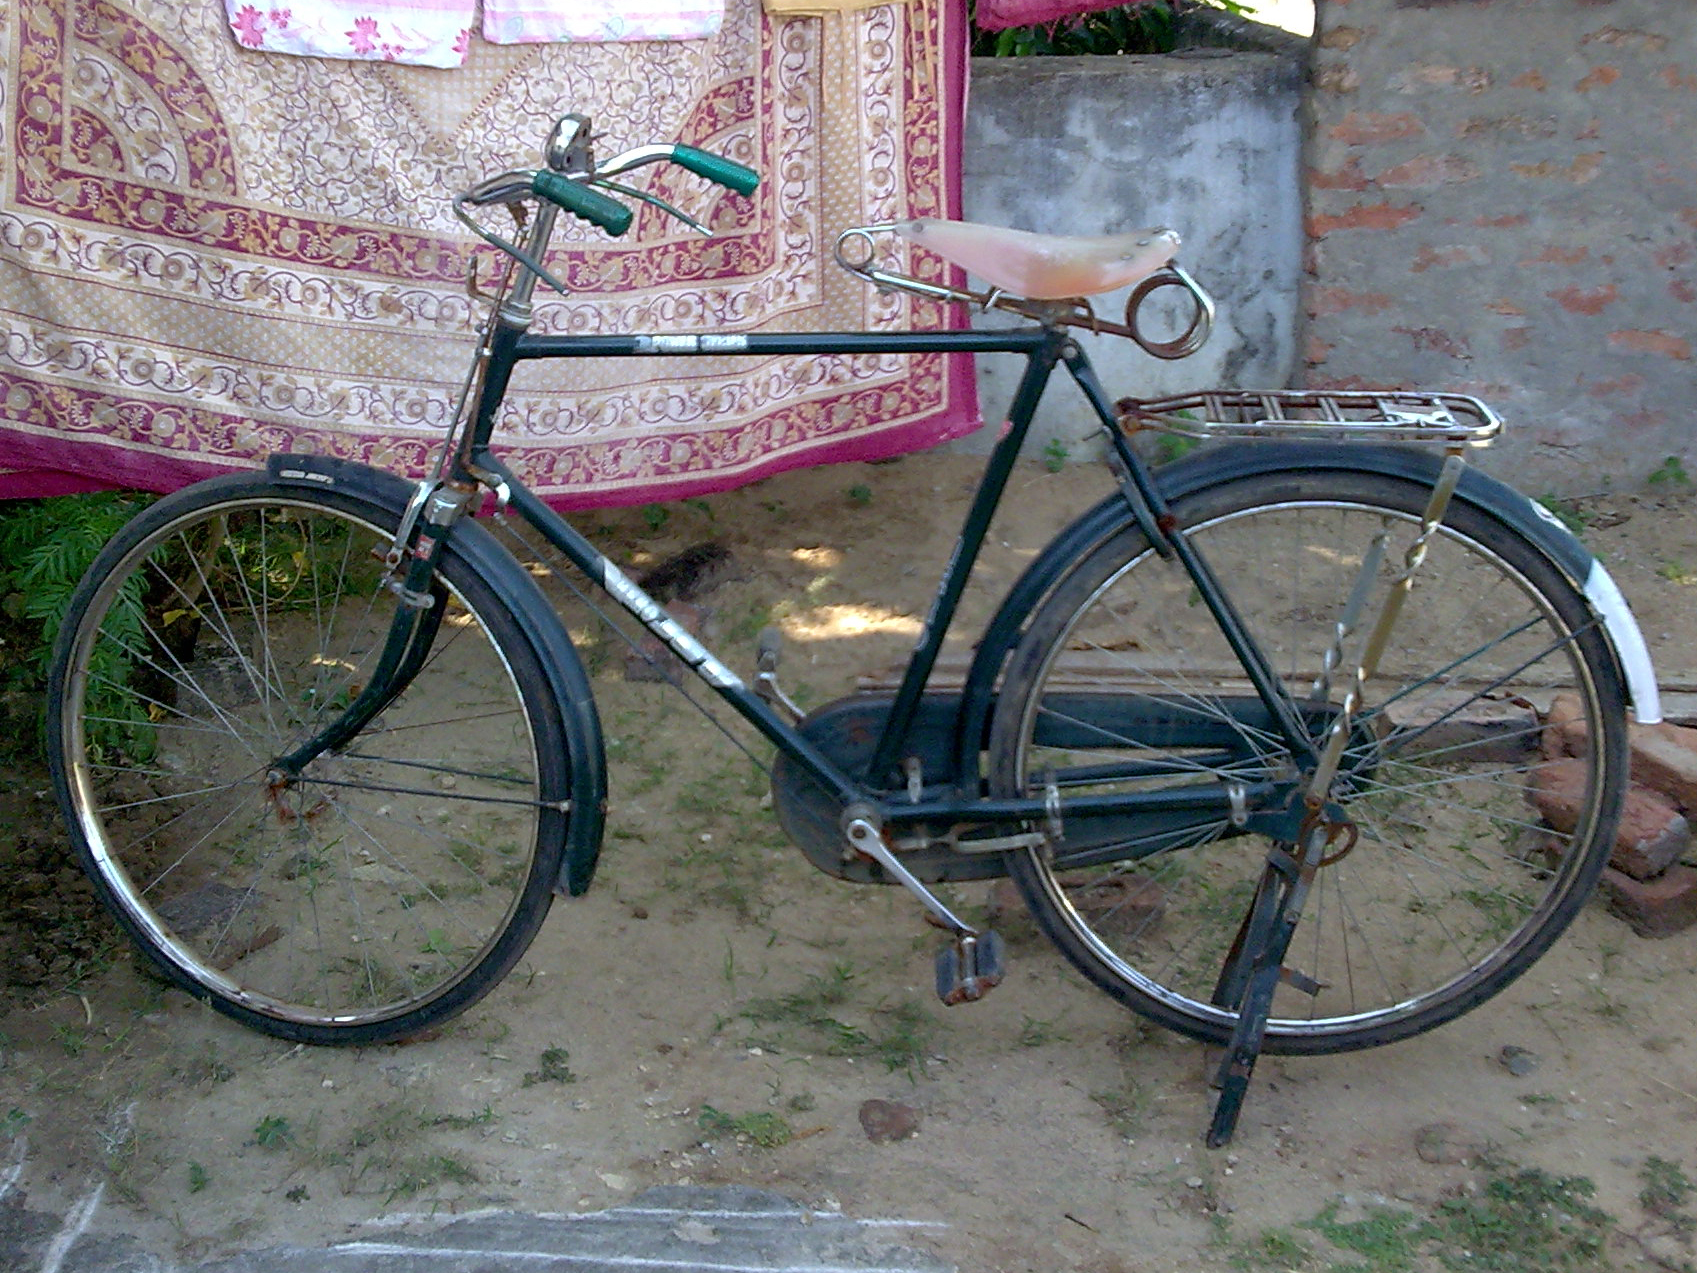 File:Hero Bicycle at Bhadrachalam.jpg - Wikimedia Commons